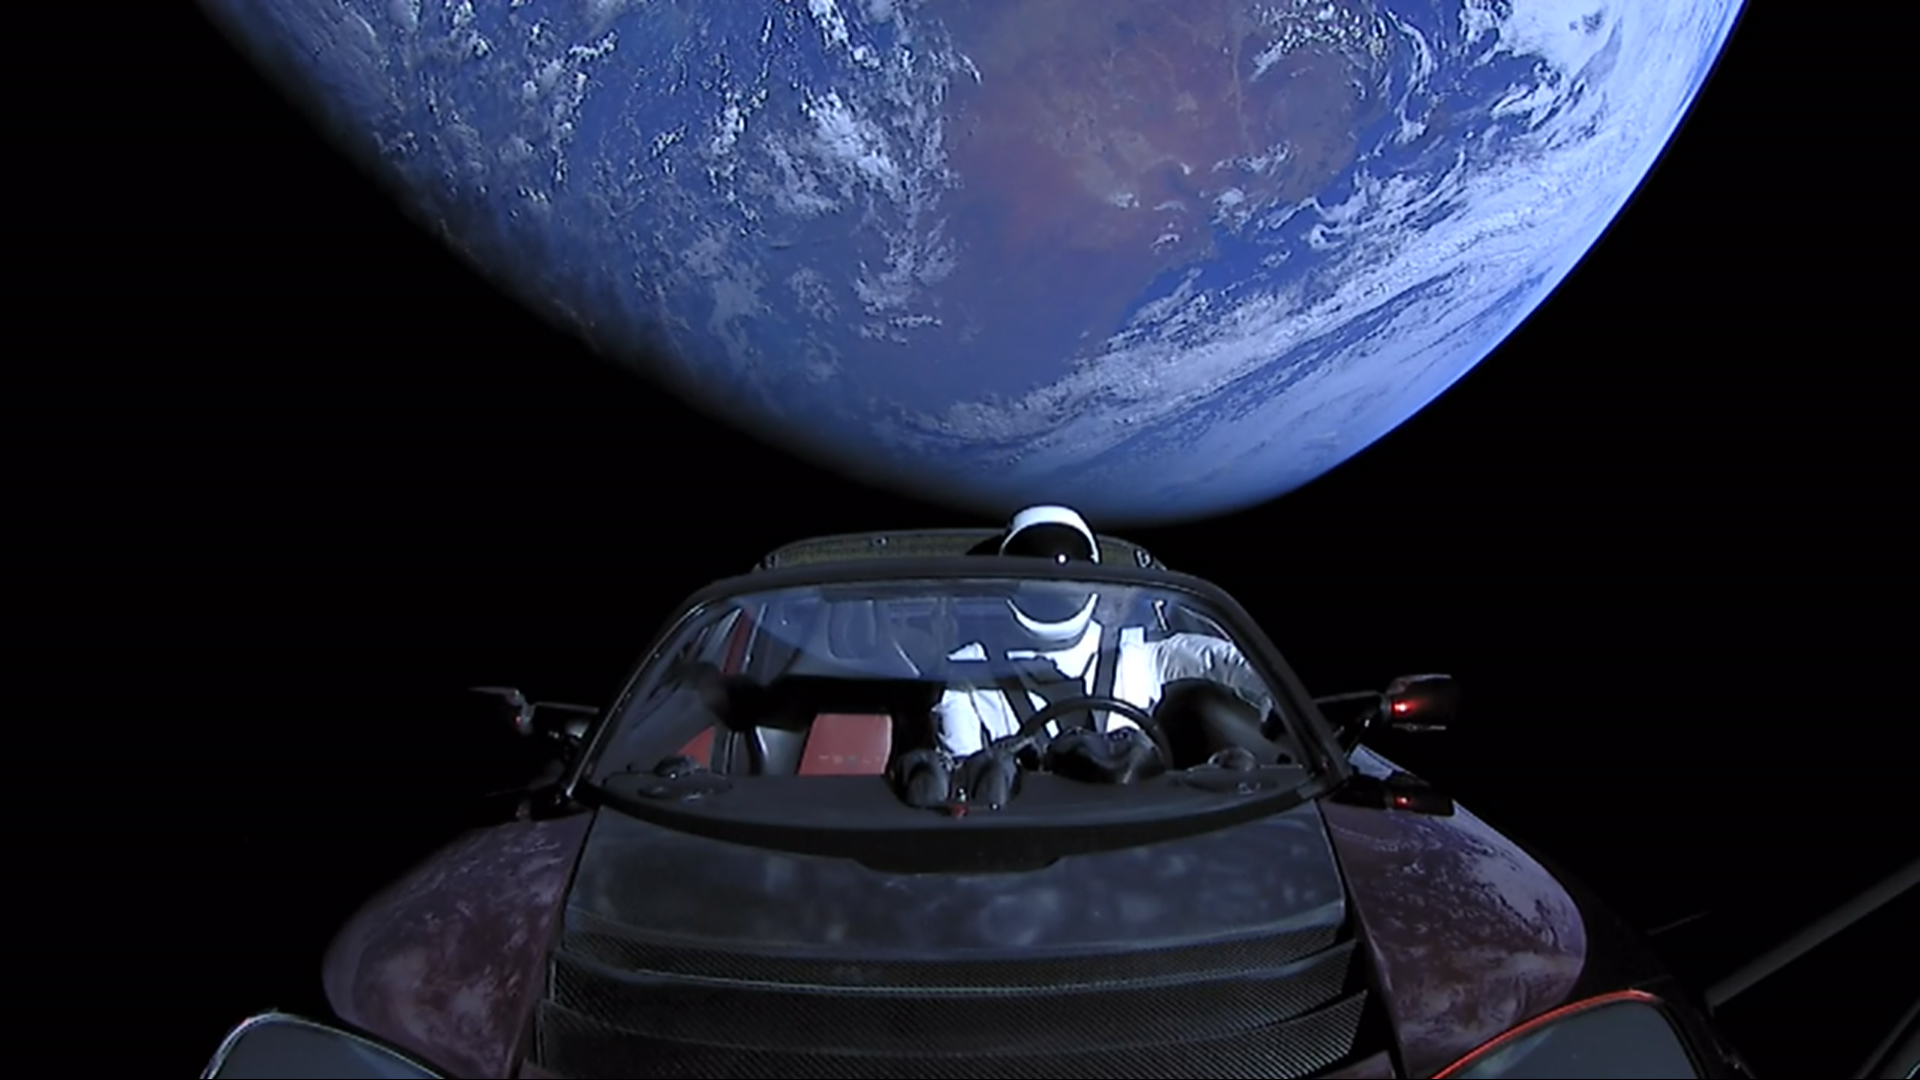 Le Tesla Roadster vole dans l'espace depuis 5 ans. Il a parcouru plus de 4 milliards de kilomètres, a fait 3,5 fois le tour du soleil et est maintenant en orbite autour de Mars.